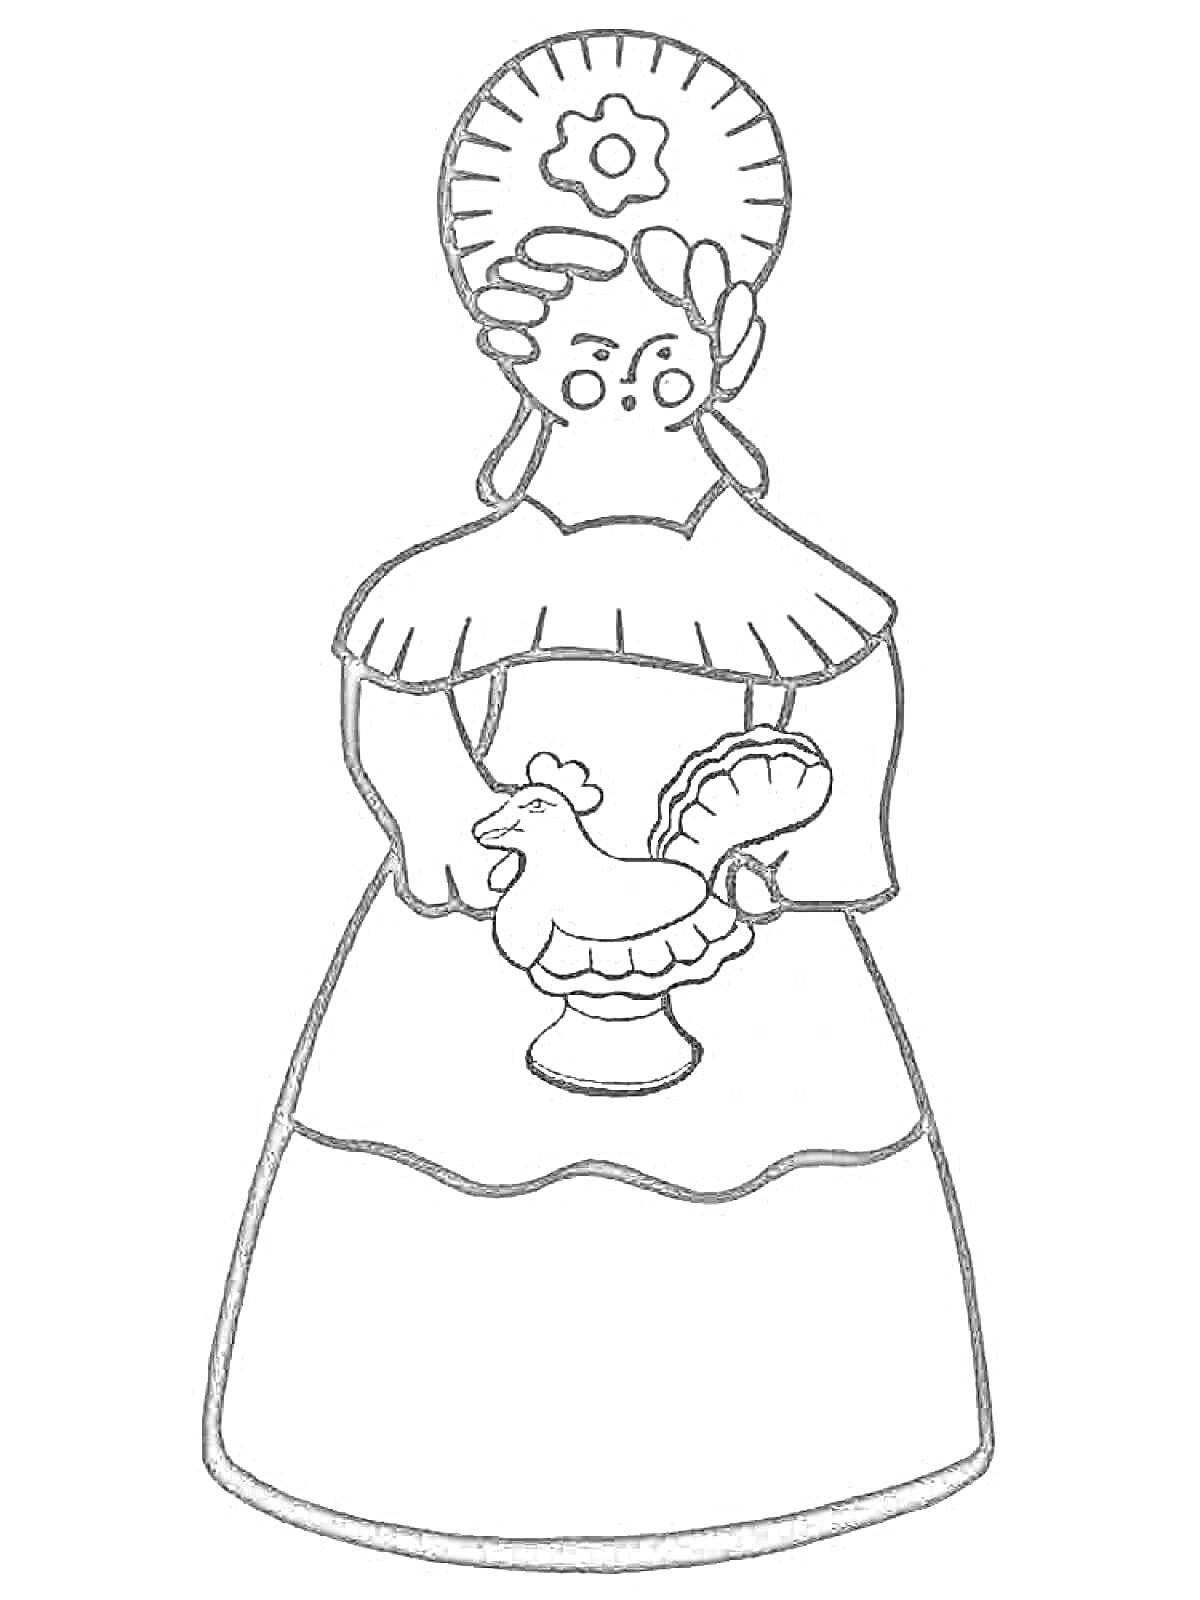 Женщина в традиционном головном уборе, держащая фигурку петушка